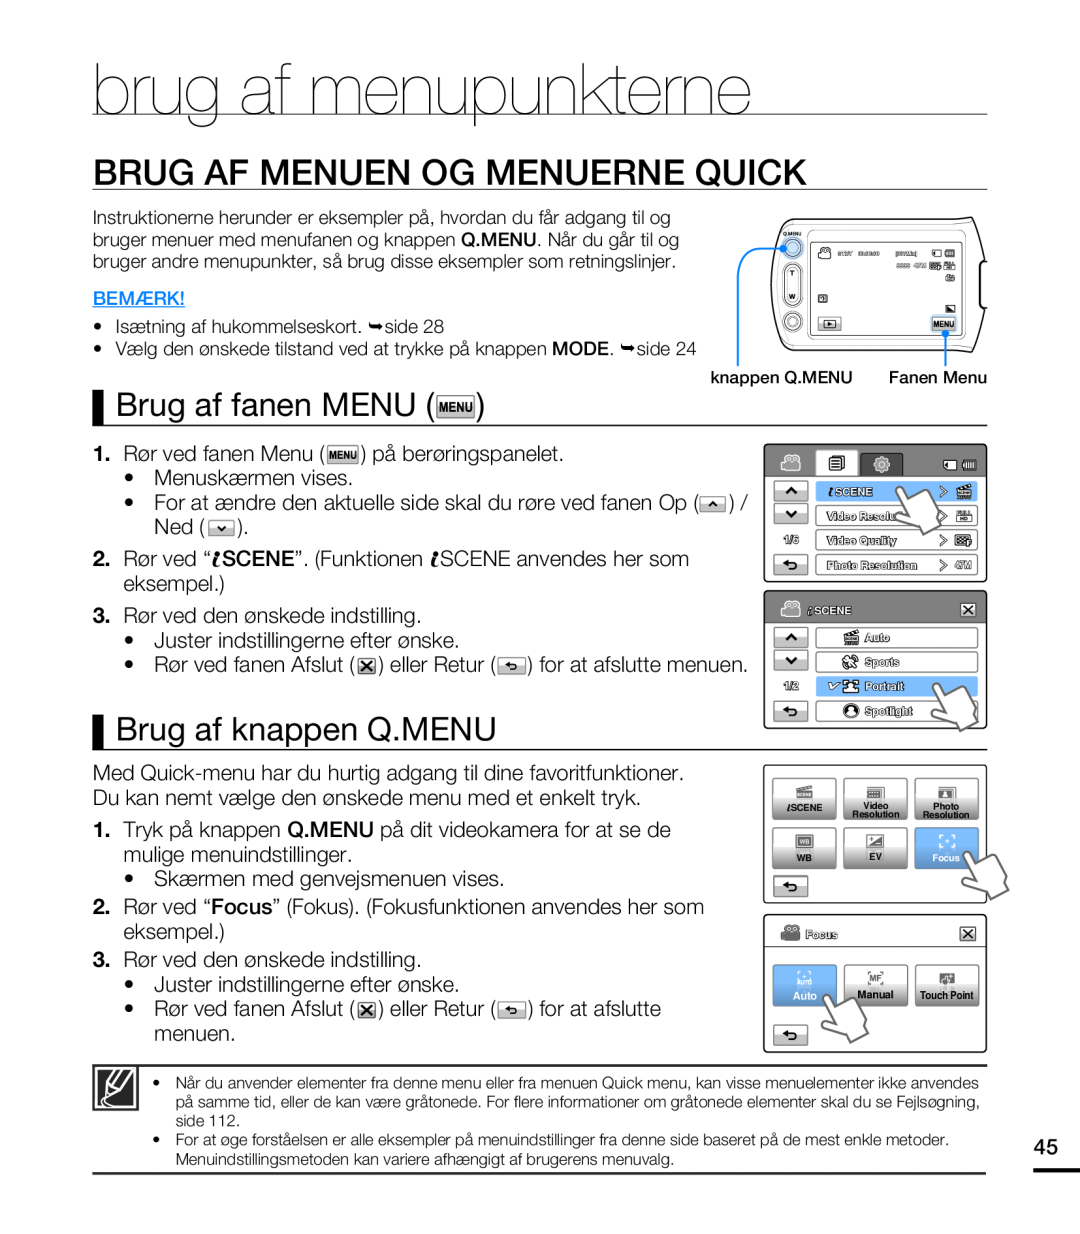 Samsung HMX-T10BP/EDC brug af menupunkterne, Brug Af Menuen Og Menuerne Quick, Brug af fanen MENU, Brug af knappen Q.MENU 